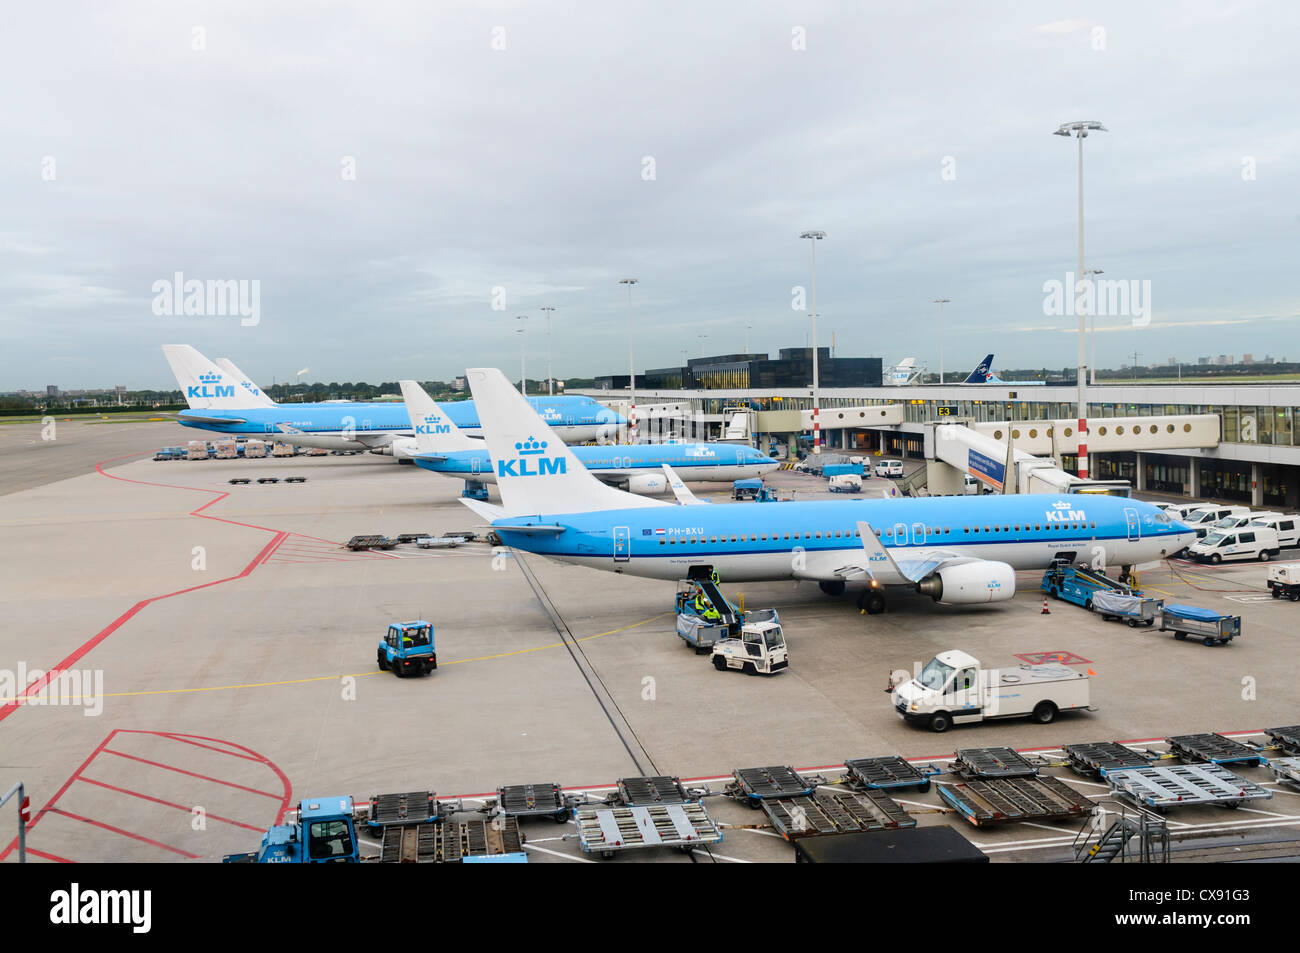 Los aviones de Air France KLM en la plataforma del aeropuerto Schiphol de Amsterdam con vehículos de servicio Foto de stock